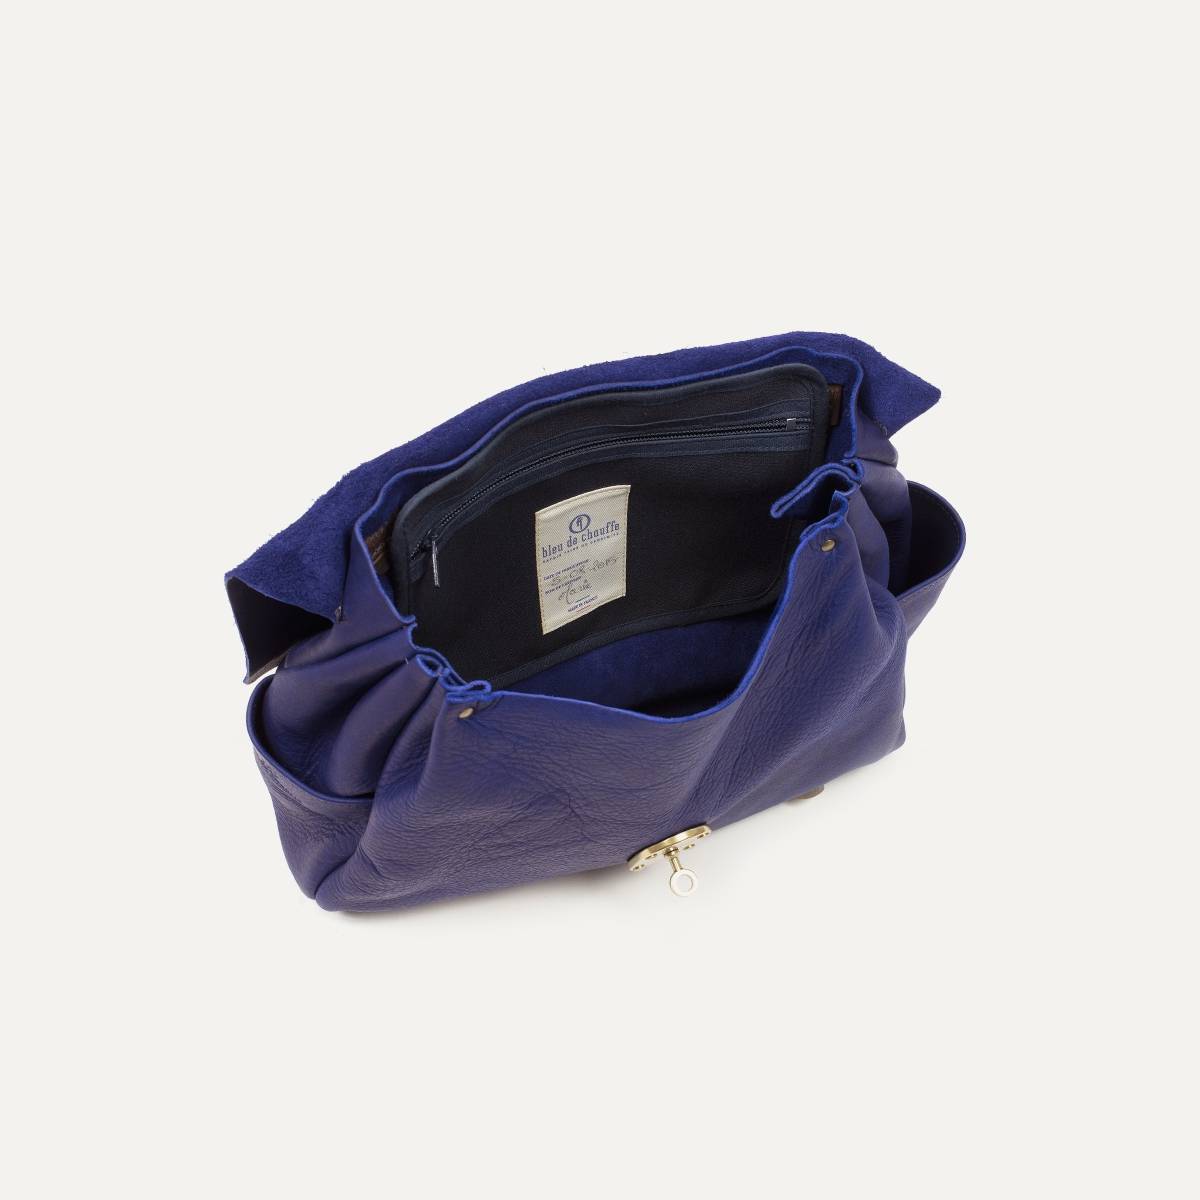 Bleu de Chauffe, Bags, Coline Bag By Bleu De Chauffe